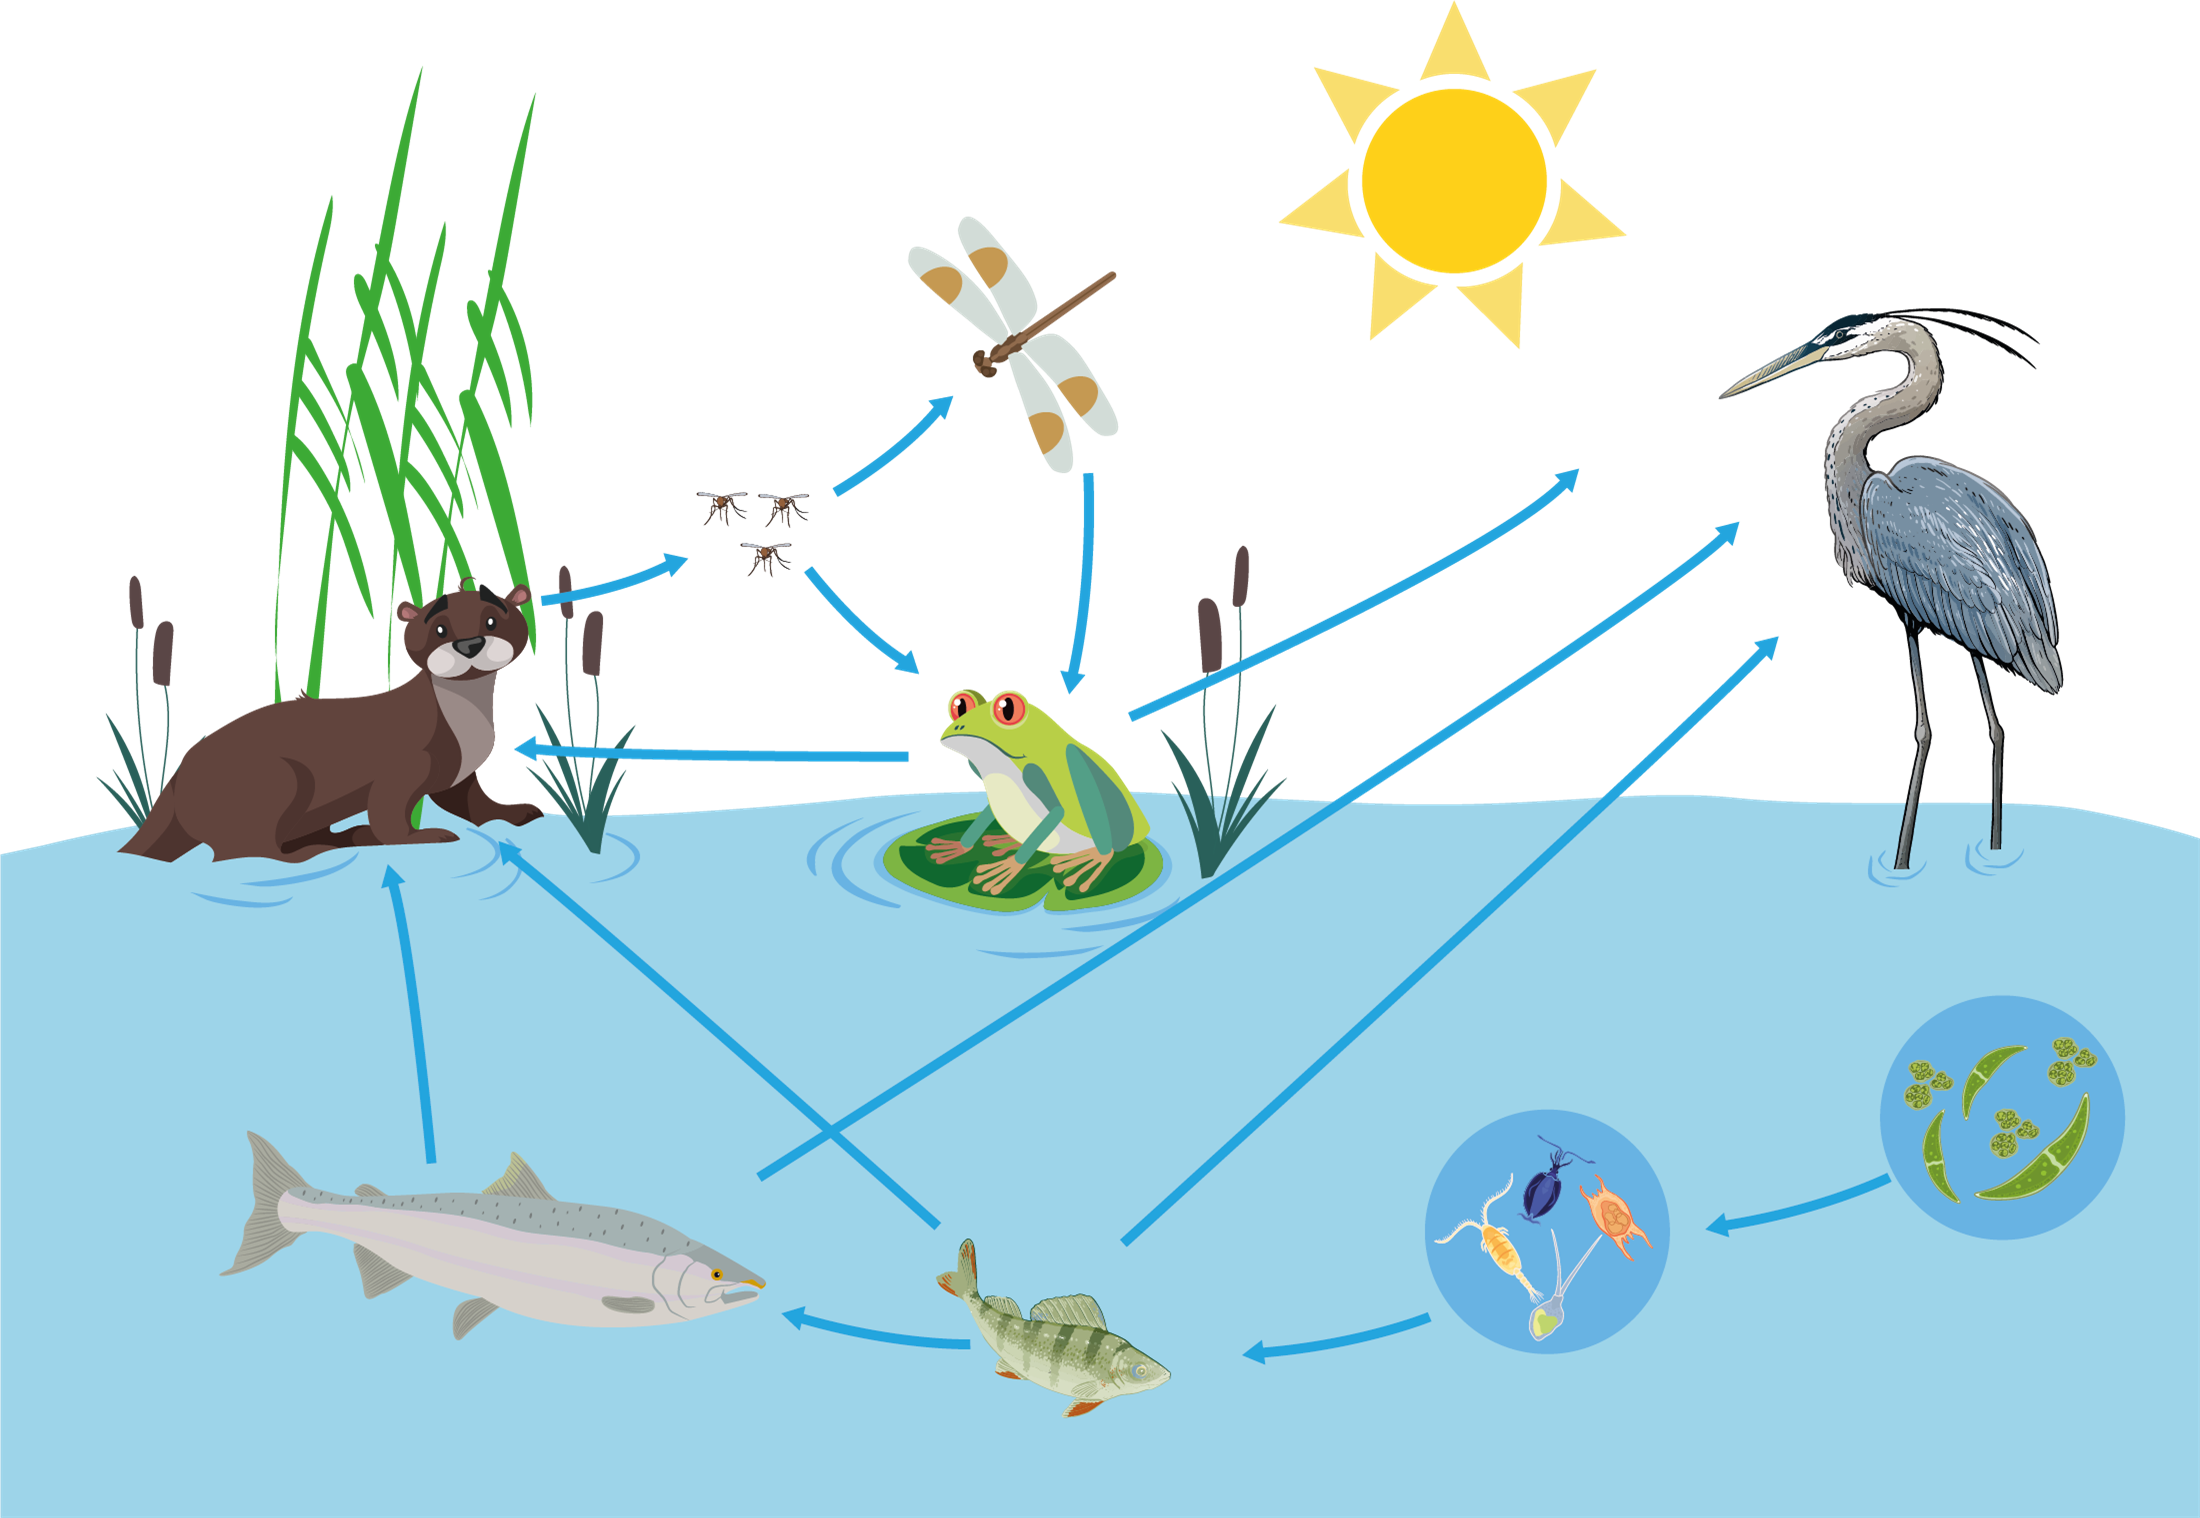 Зоопланктон трофический уровень